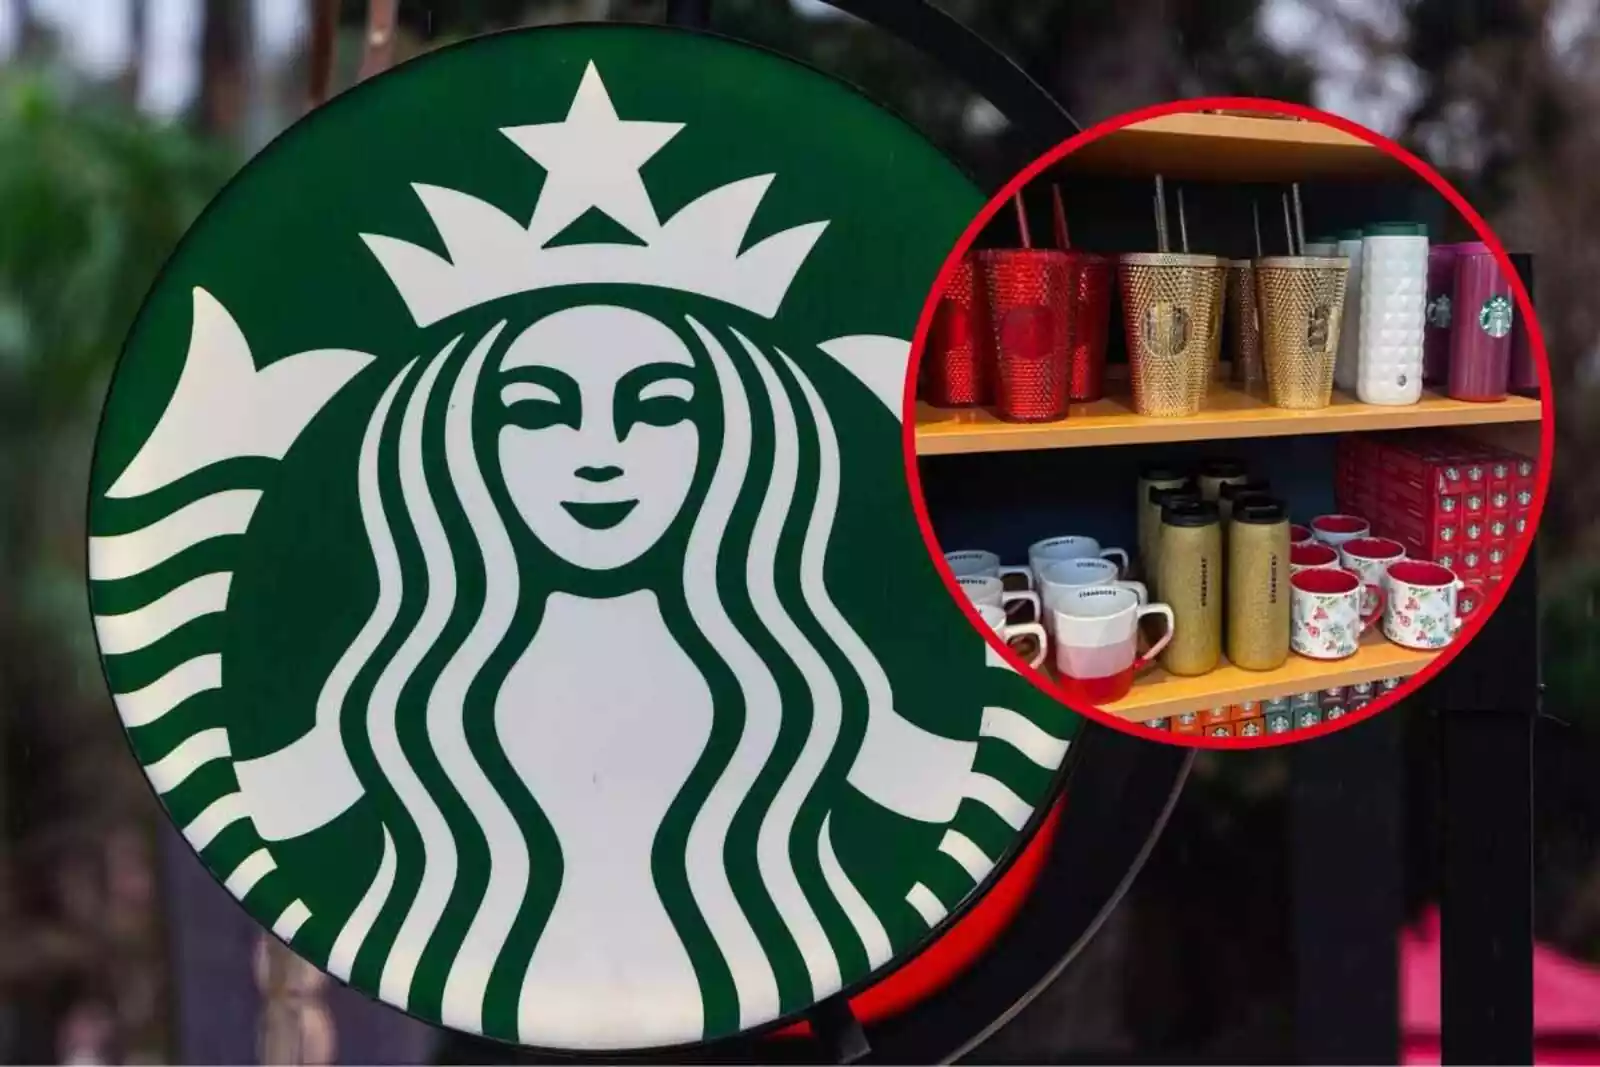 Vaso Starbucks Red Cup Reutilizable Navidad Bebidas Frías